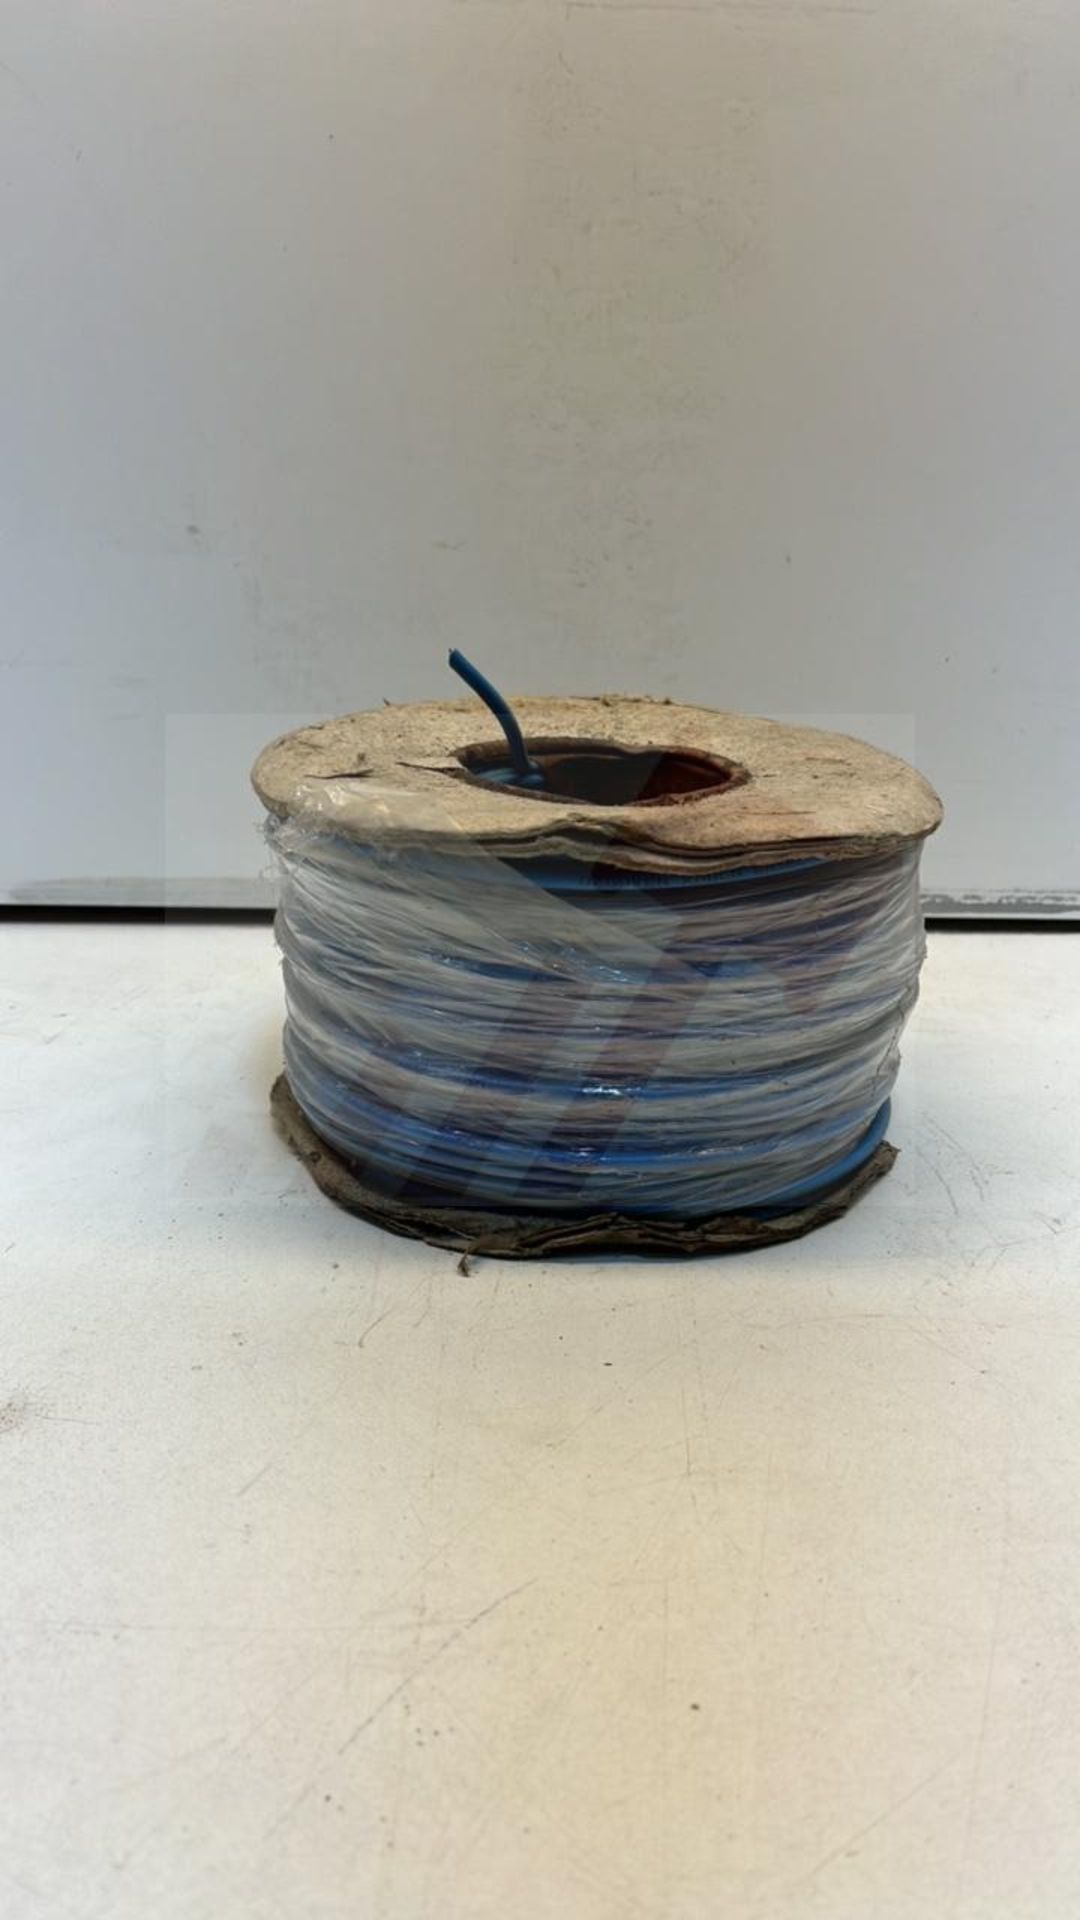 Reel Of Single Core Blue Wire